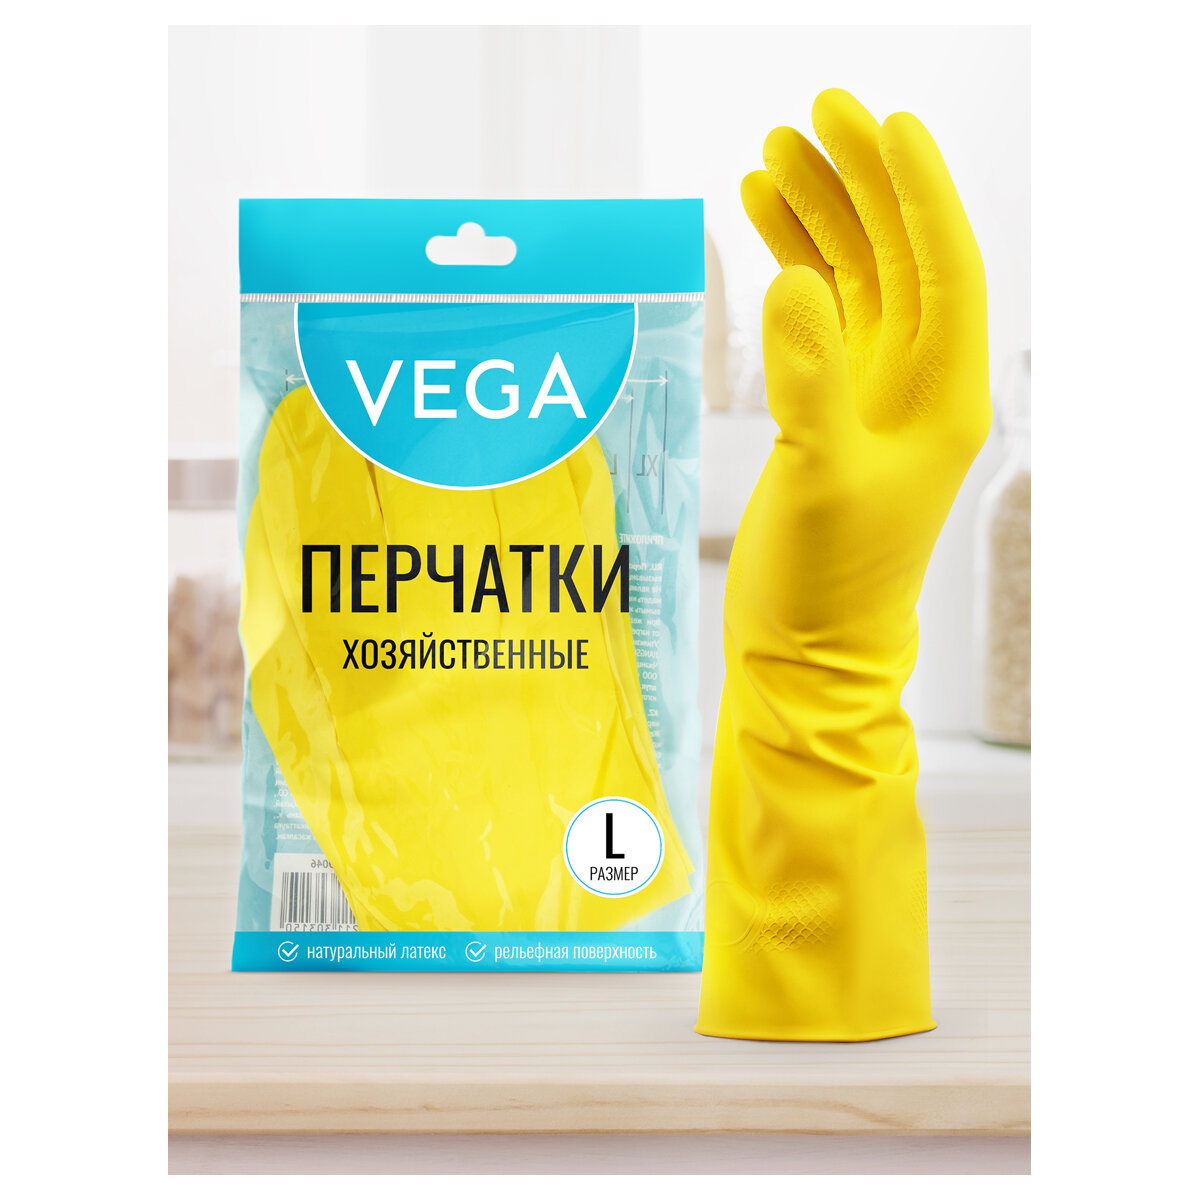 Перчатки резиновые хозяйственные Vega, многоразовые, хлопчатобумажное напыление, р. L, желтые, пакет с европодвесом, 5 штук